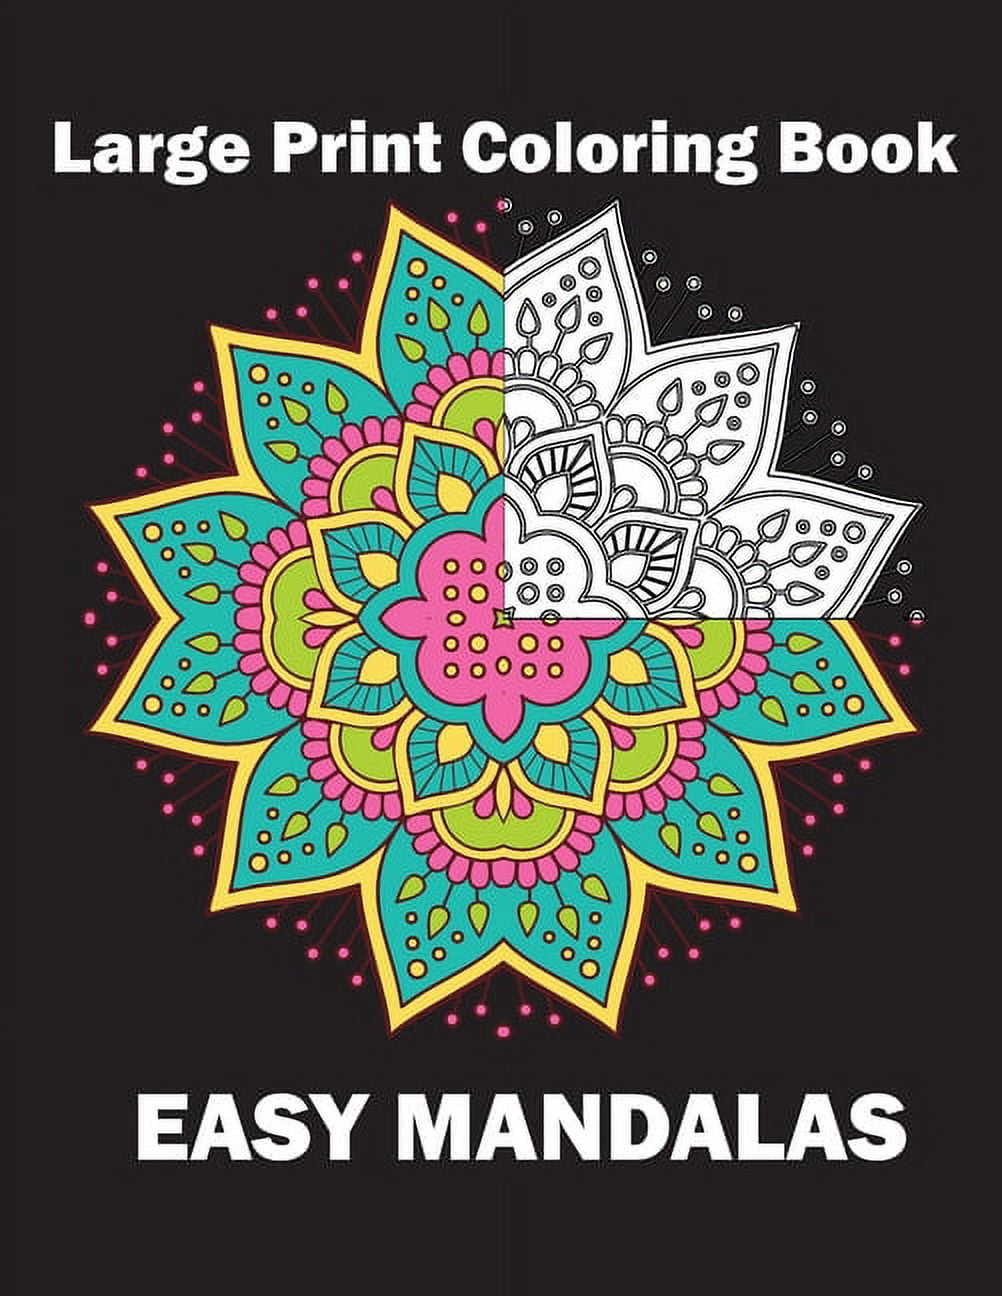 Mandalas para niños: Libro para colorear con patrones simples de mandala.  (Spanish Edition)